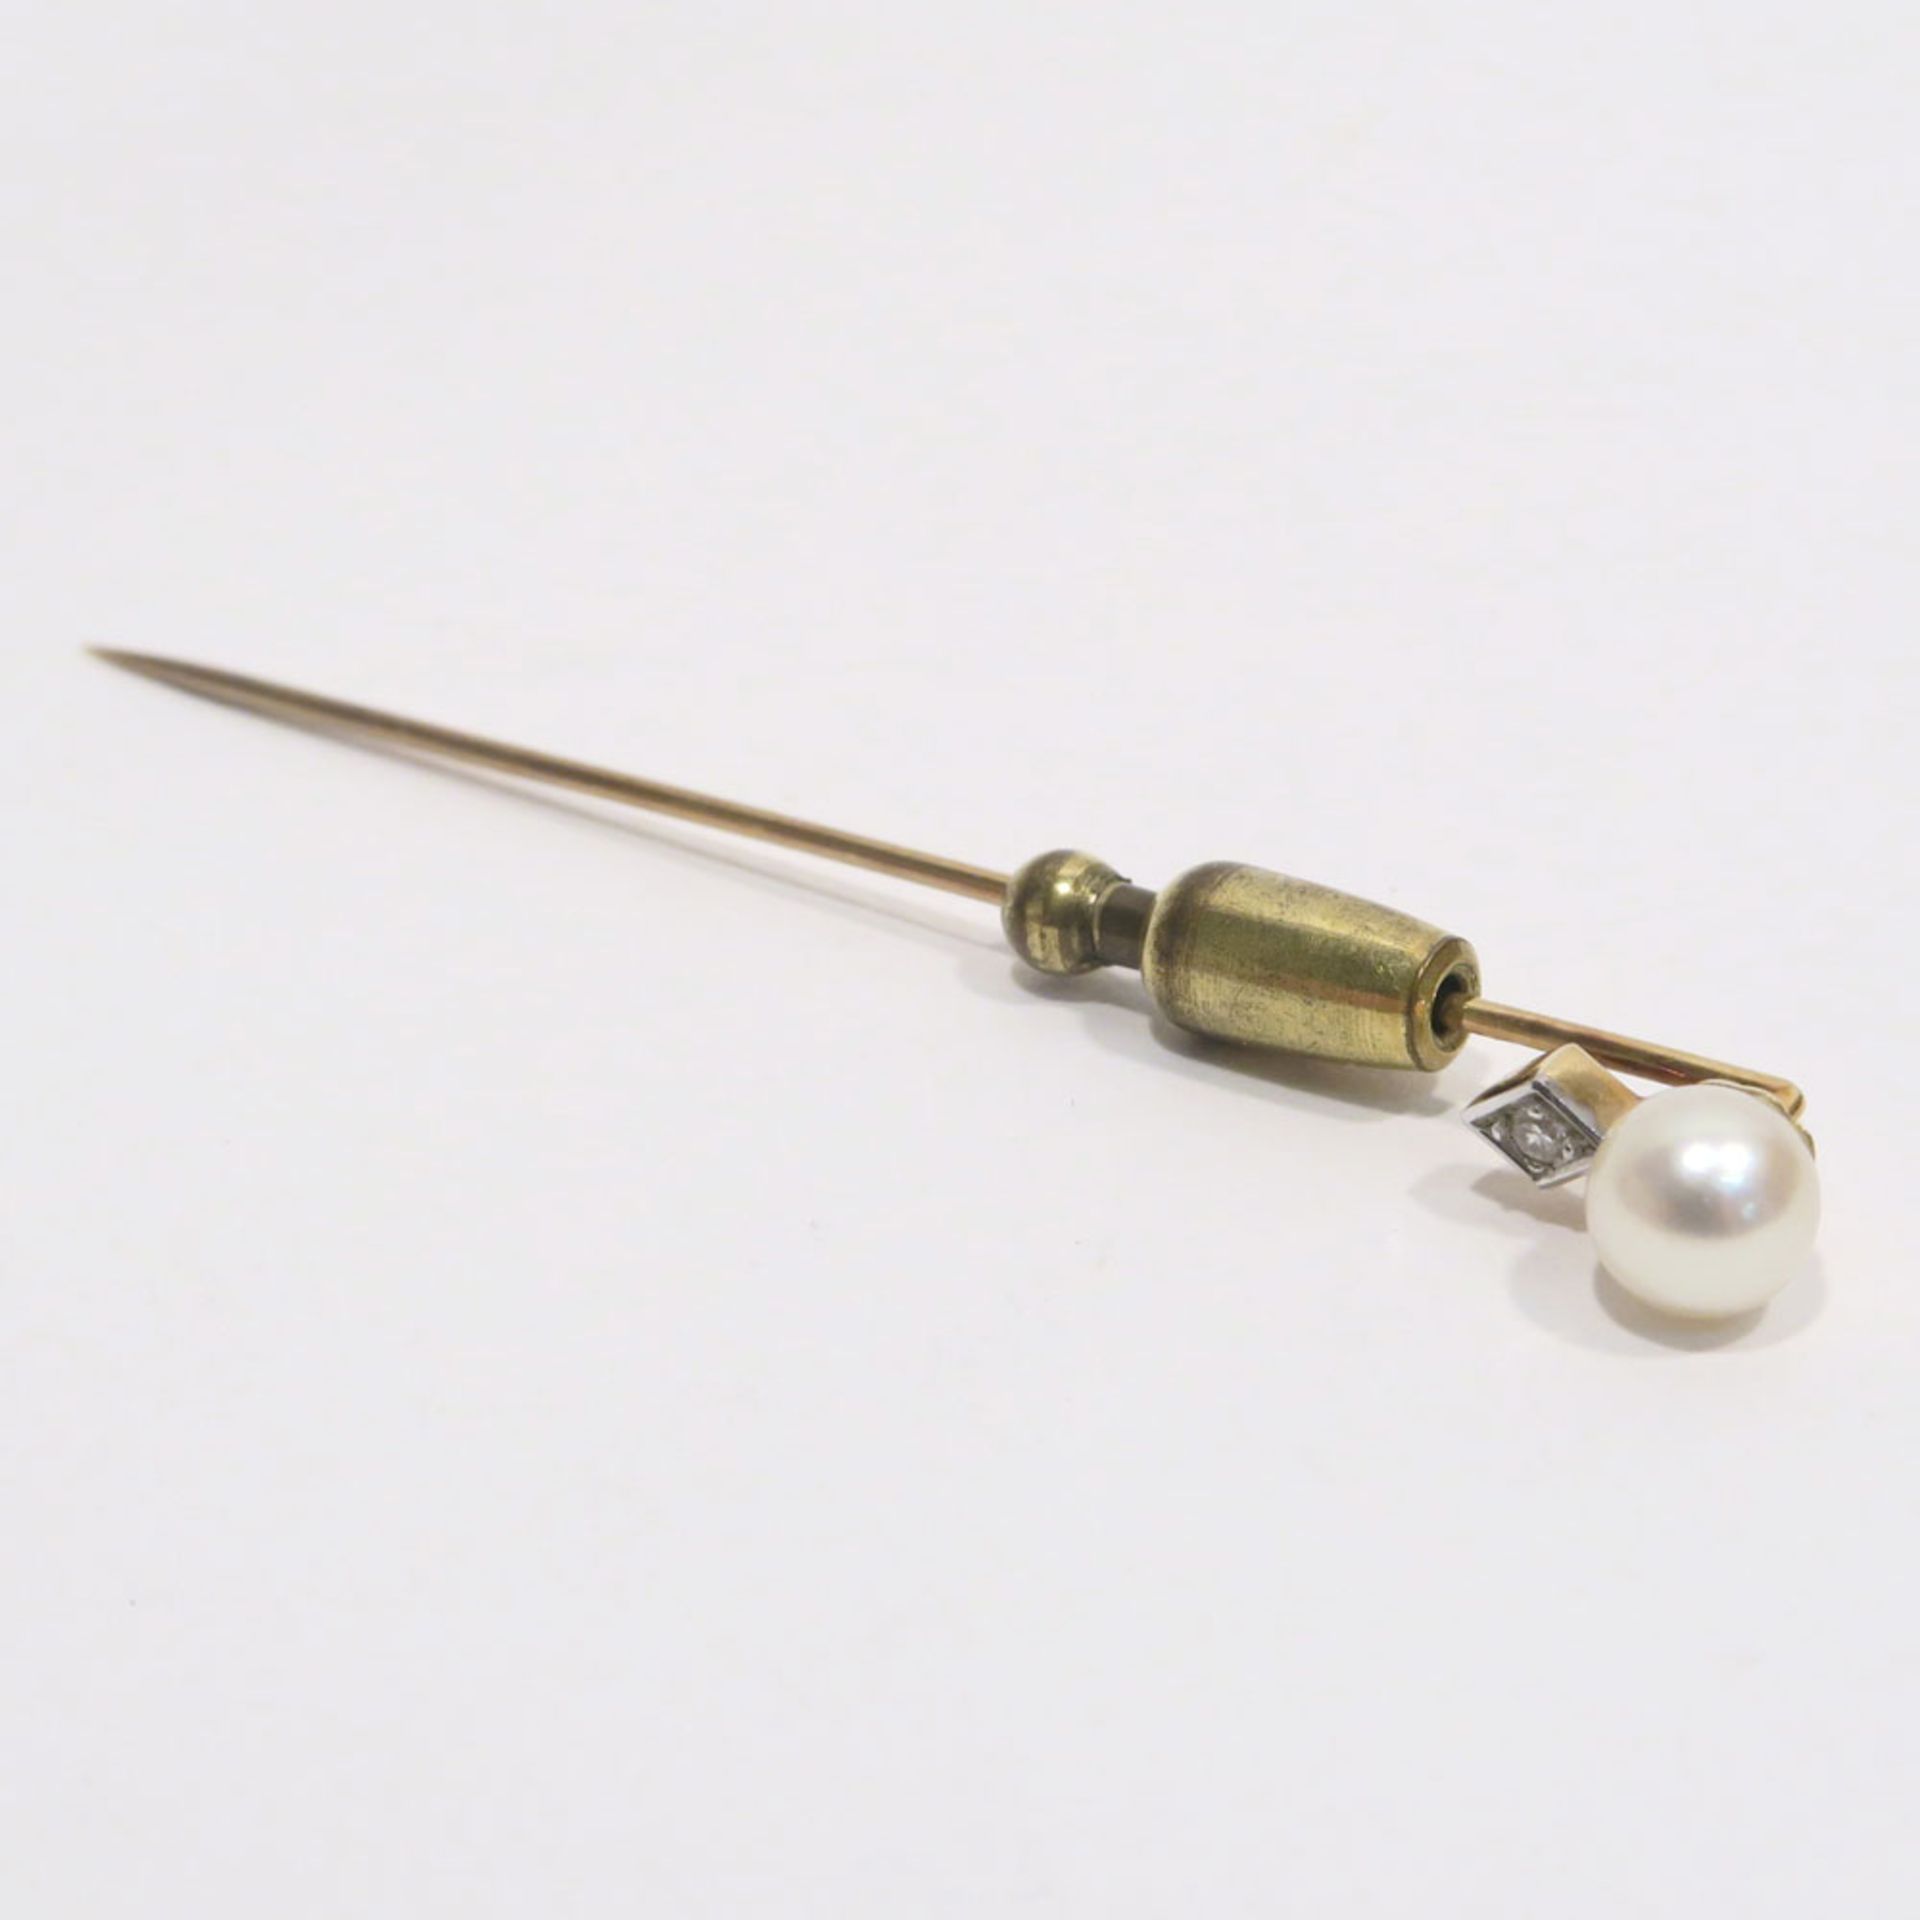 Anstecknadel14 K GG, Marken (585). Mit einer Perle und einem Kleindiamant. L. 7 cm. Ges. 2,7 g.